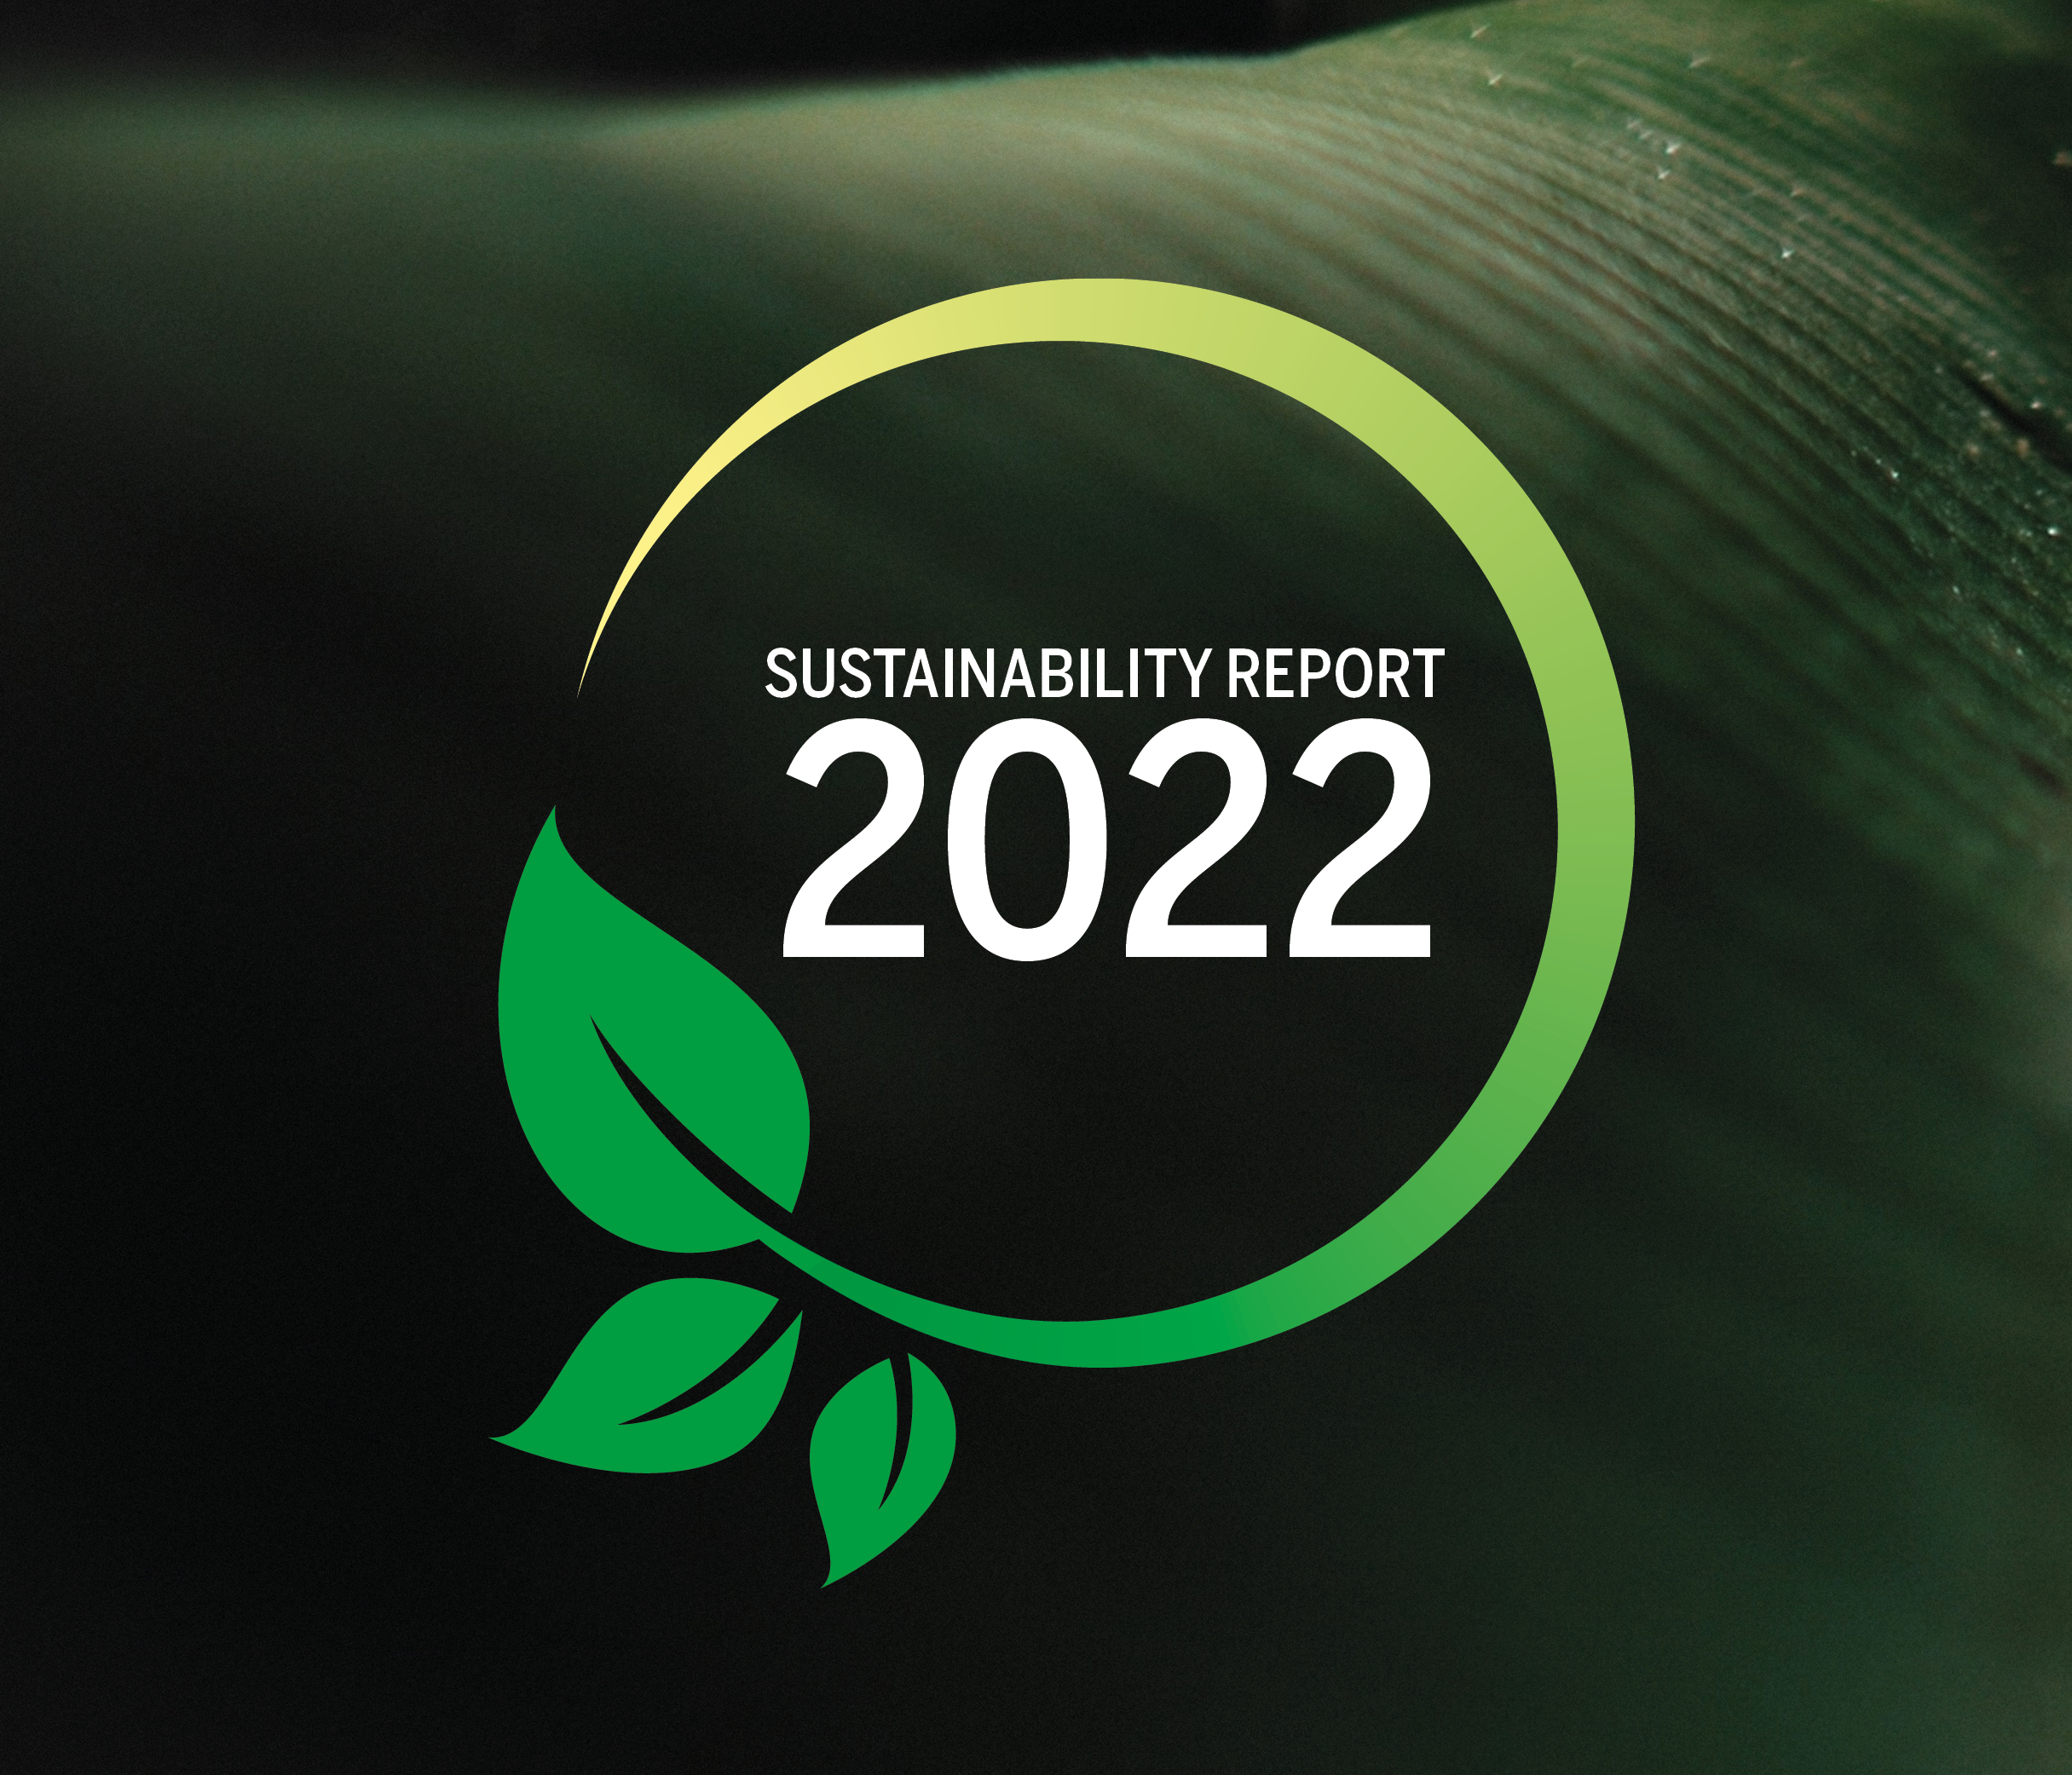 Vastuullisuusraporttimme vuodelle 2022